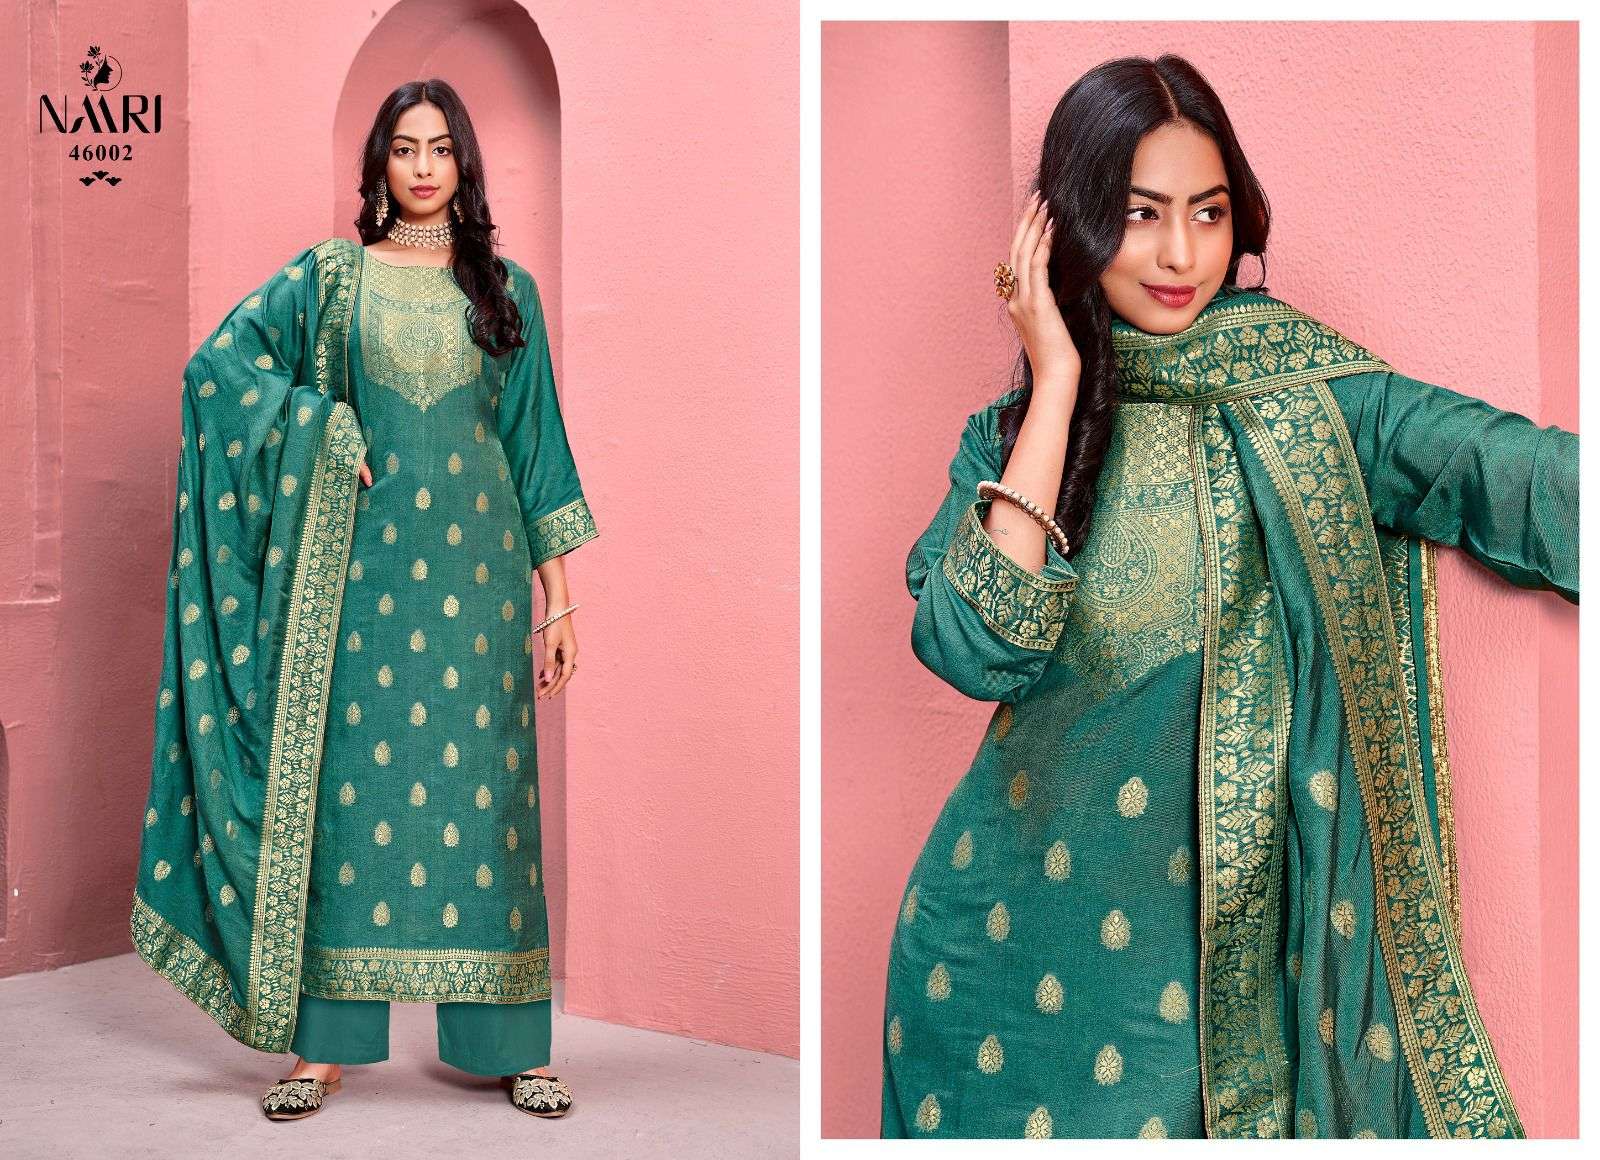 naari gulzar 46001-46004 series designer wedding wear plazzo salwar suit wholesaler surat gujarat